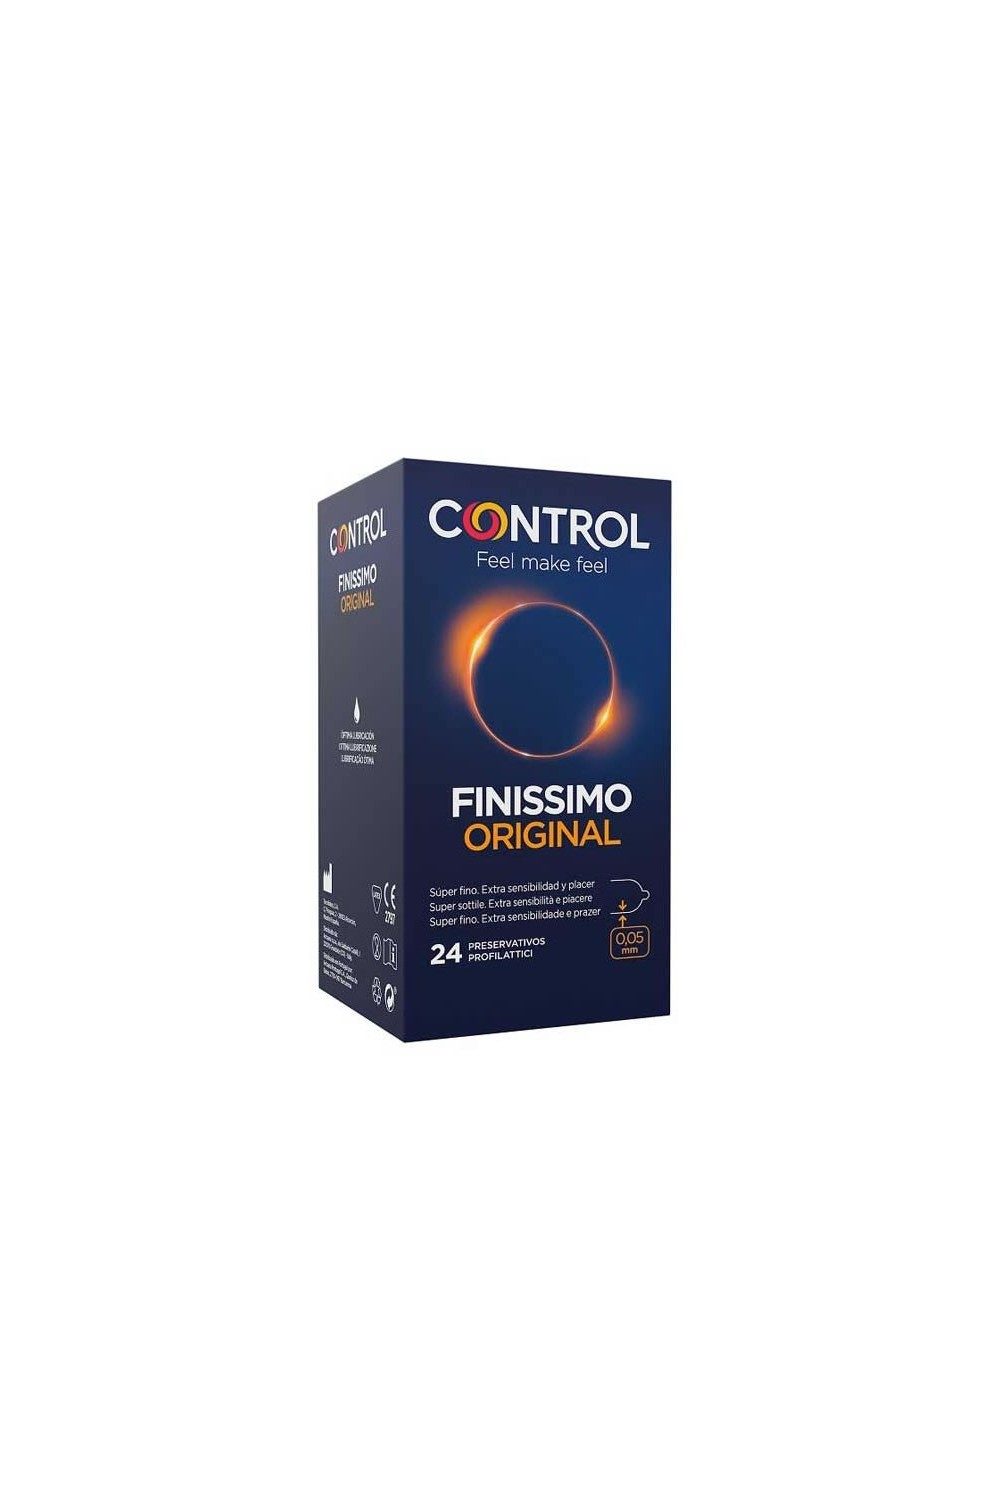 Control Finissimo Original 24 Units